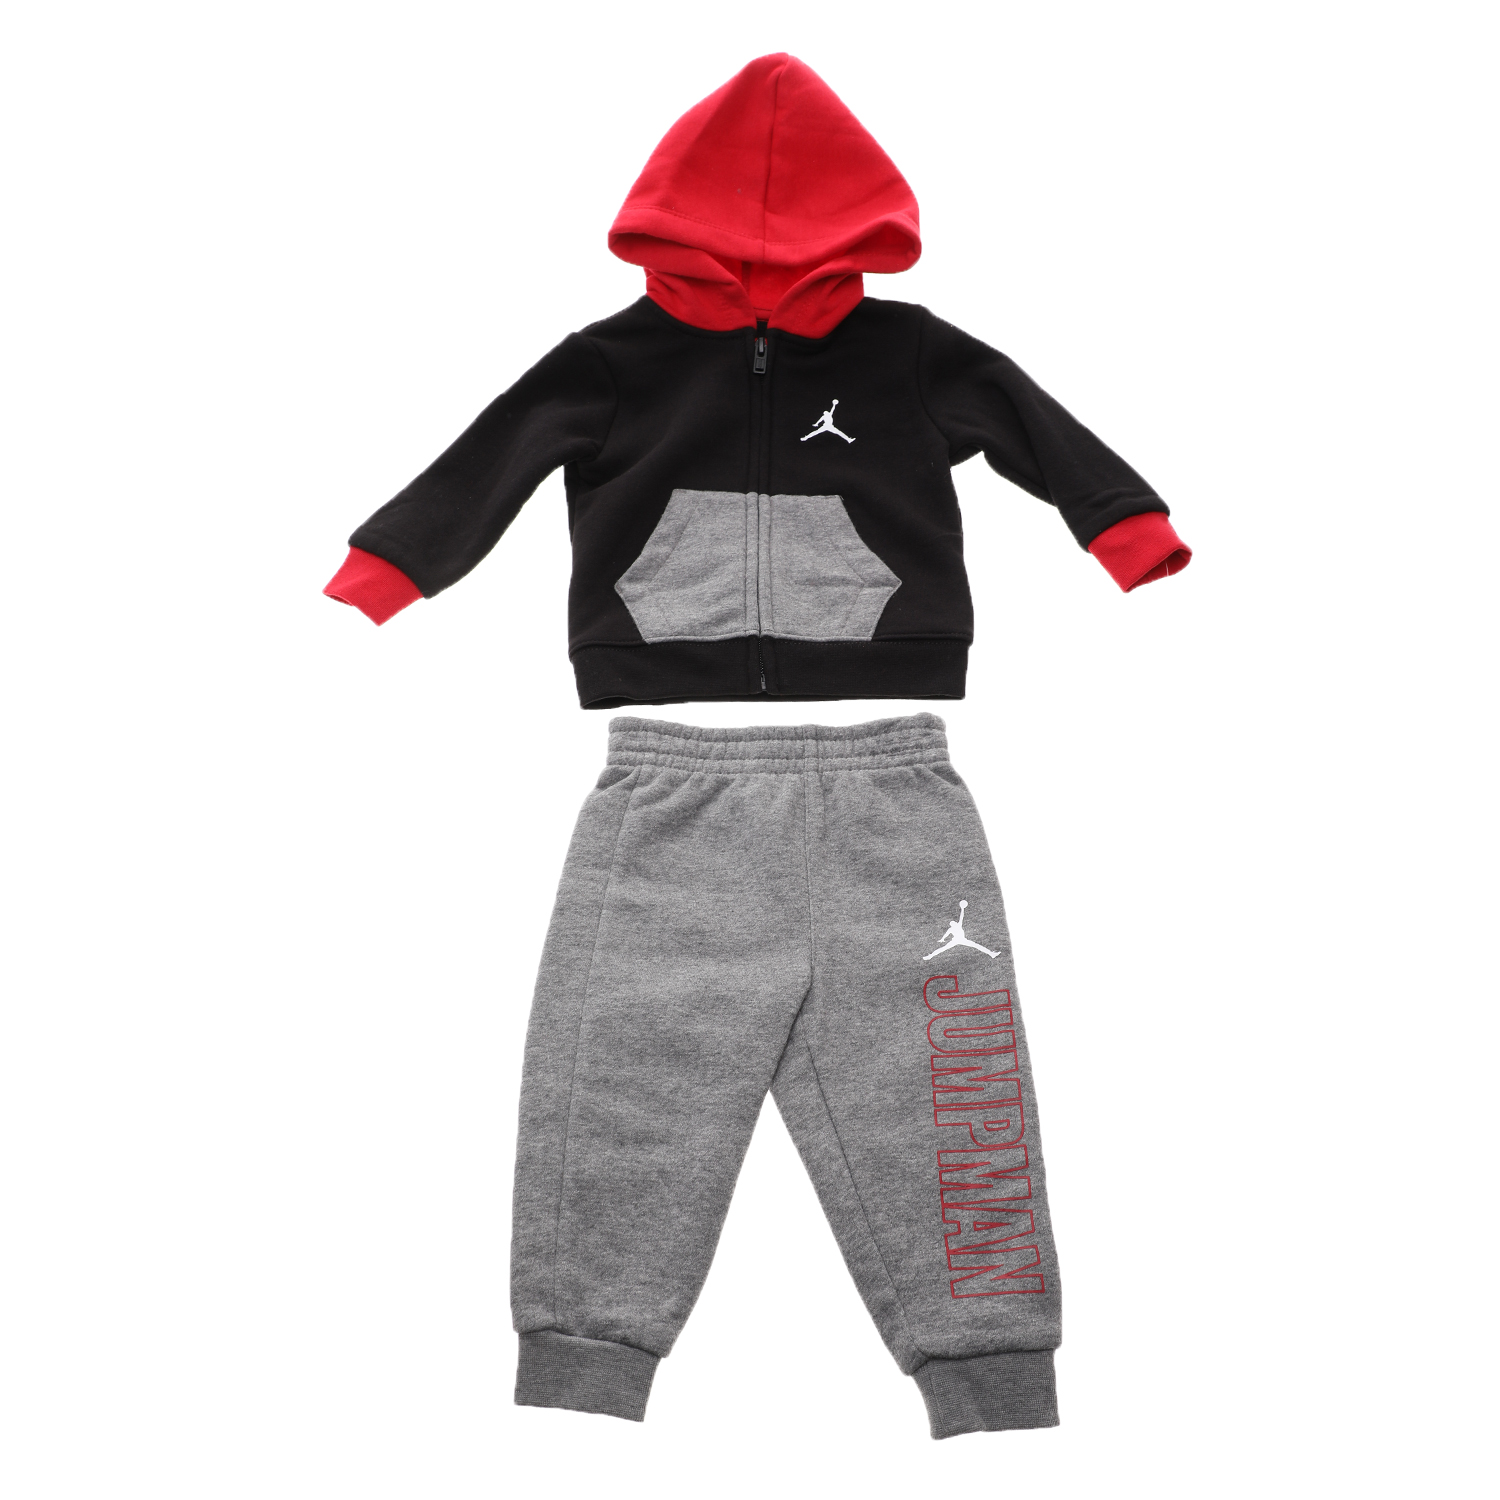 Παιδικά/Boys/Ρούχα/Σετ NIKE KIDS - Παιδικό σετ φόρμας NIKE JUMPMAN FZ SET μαύρο-γκρί